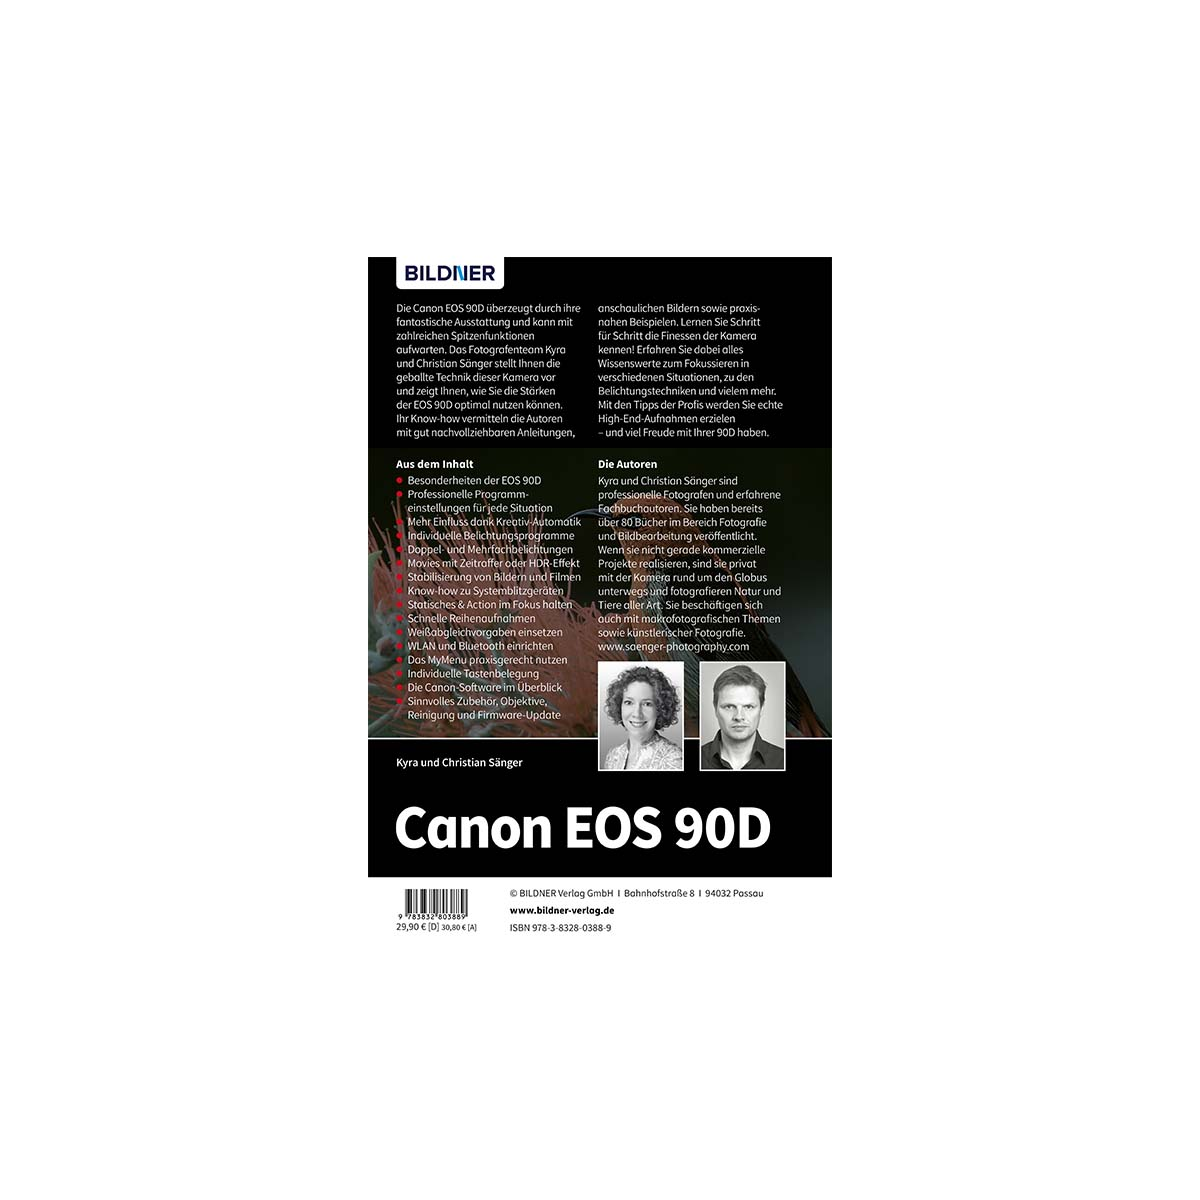 Canon zu EOS umfangreiche Ihrer 90D Kamera! - Praxisbuch Das